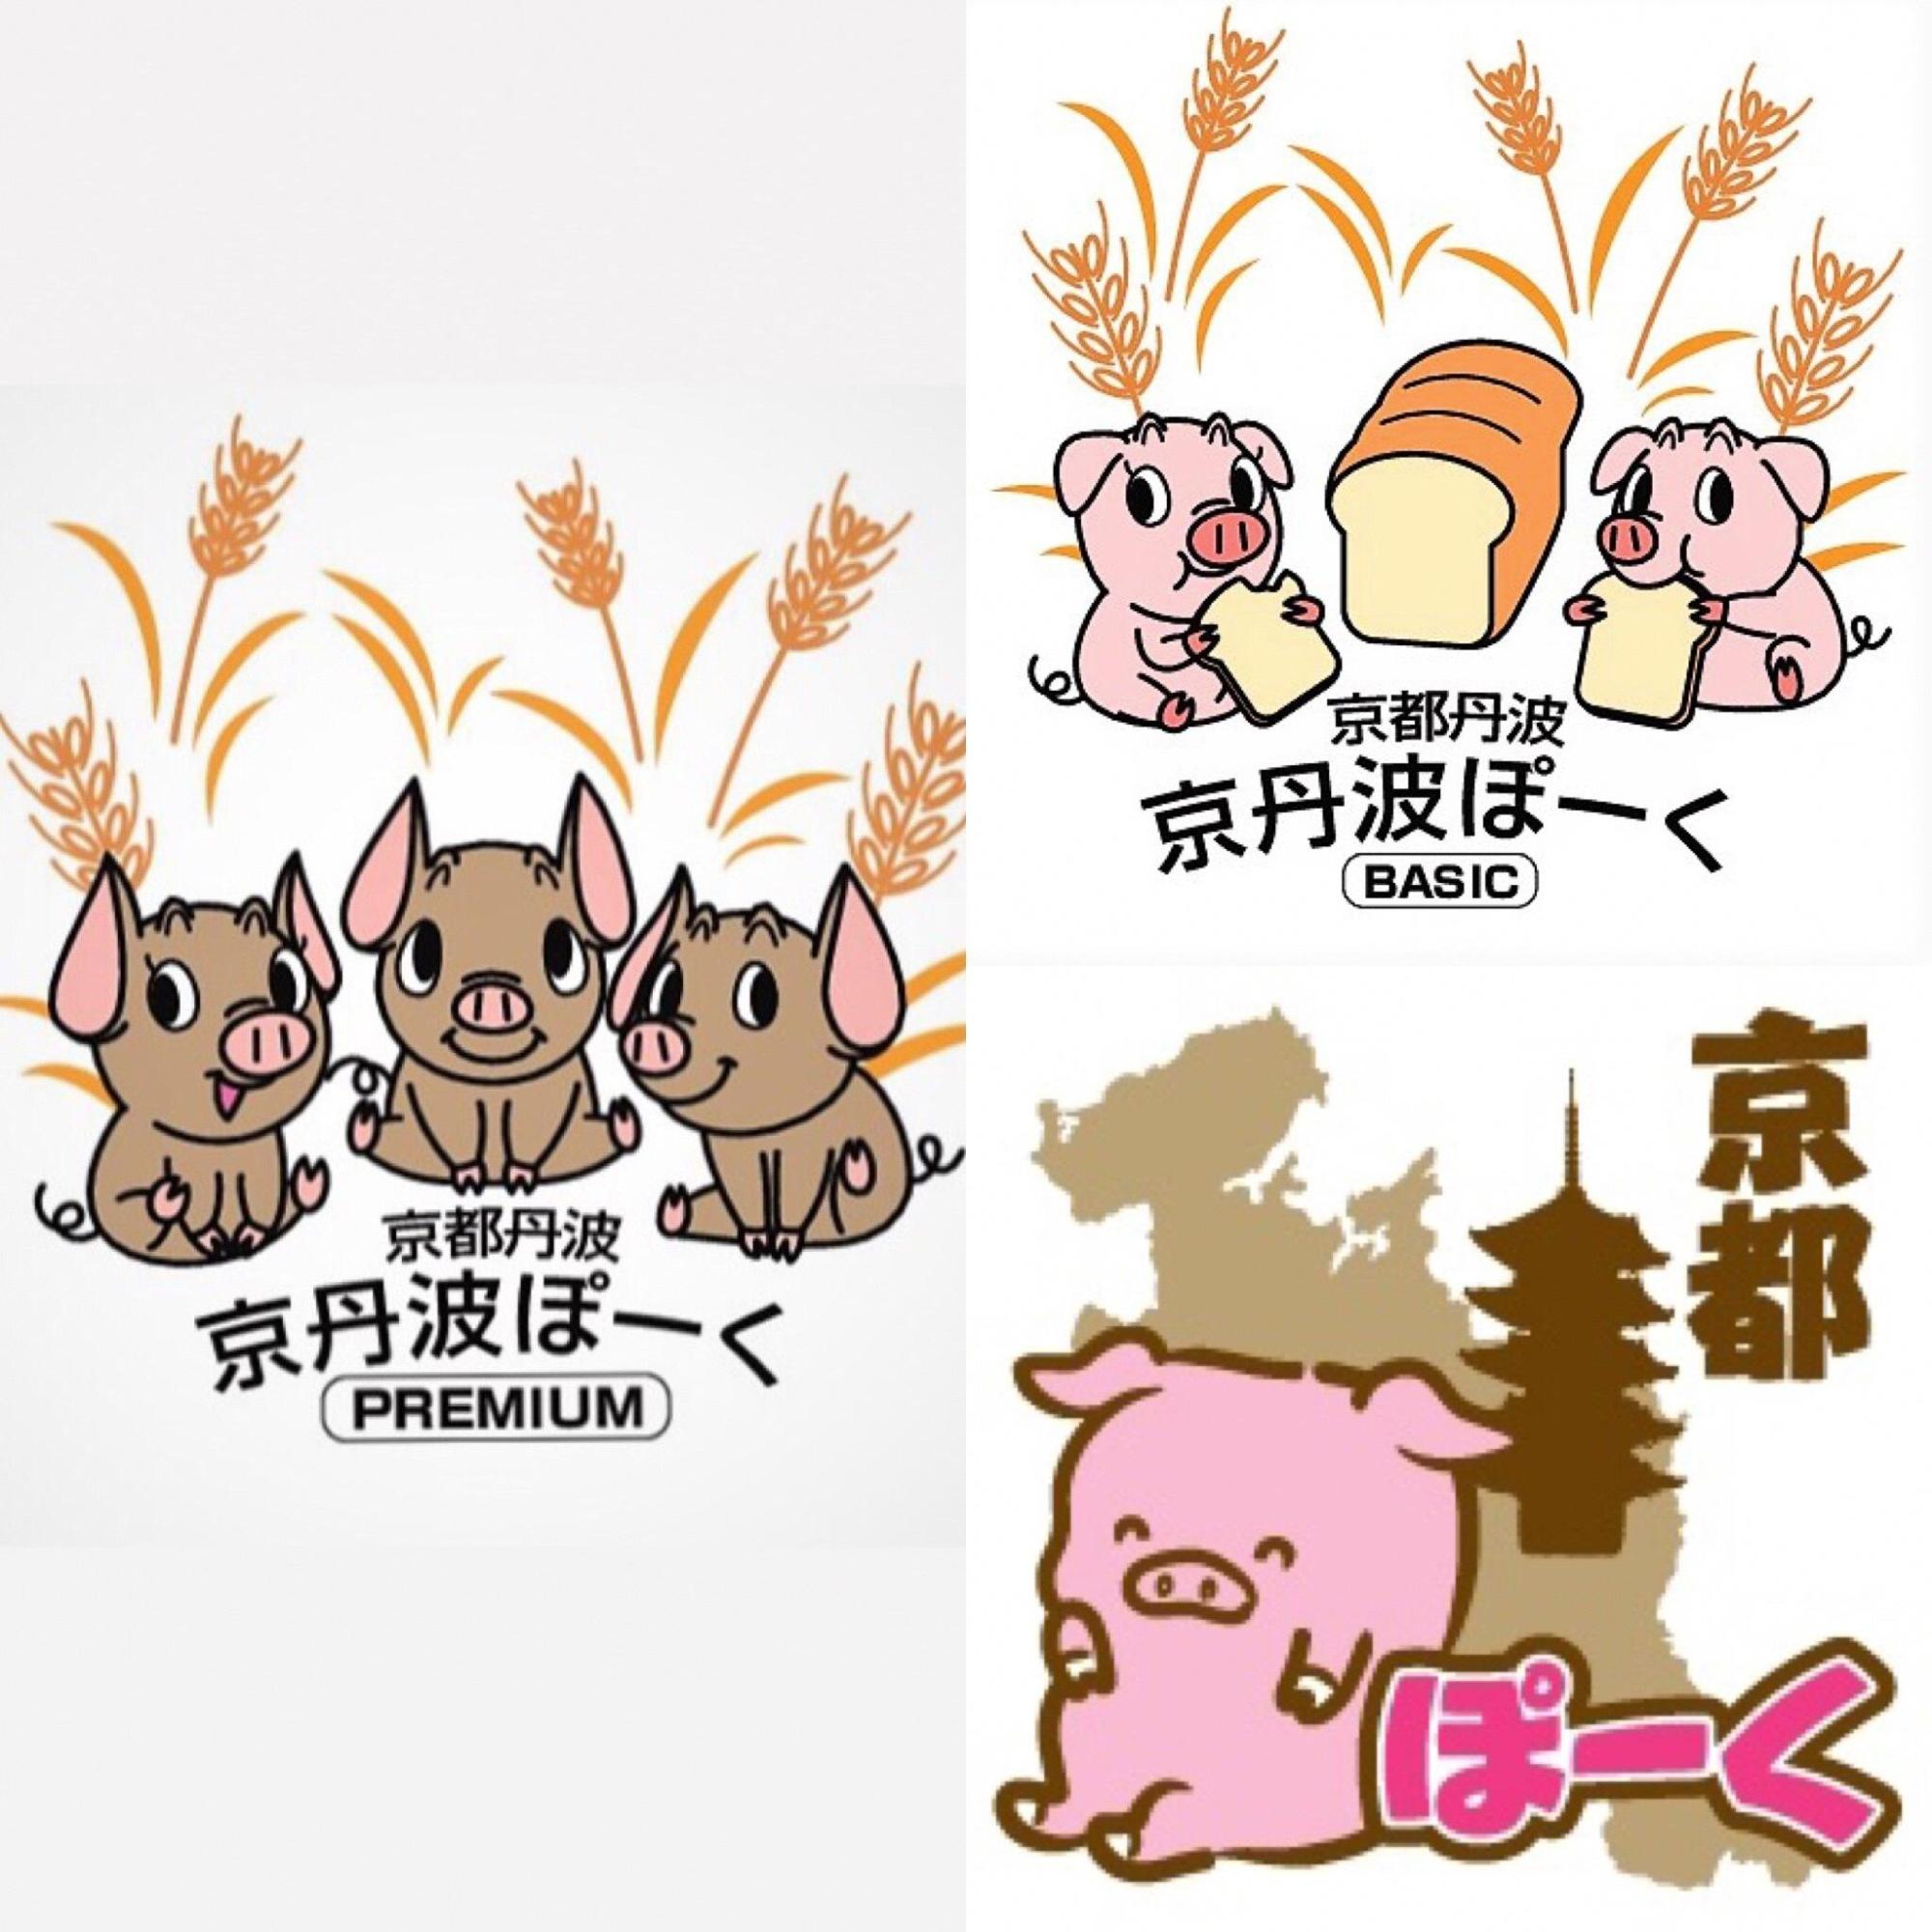 左側に3匹の豚のイラスト、右上にパンを食べている豚のイラスト、右下にピンクの豚のイラスト